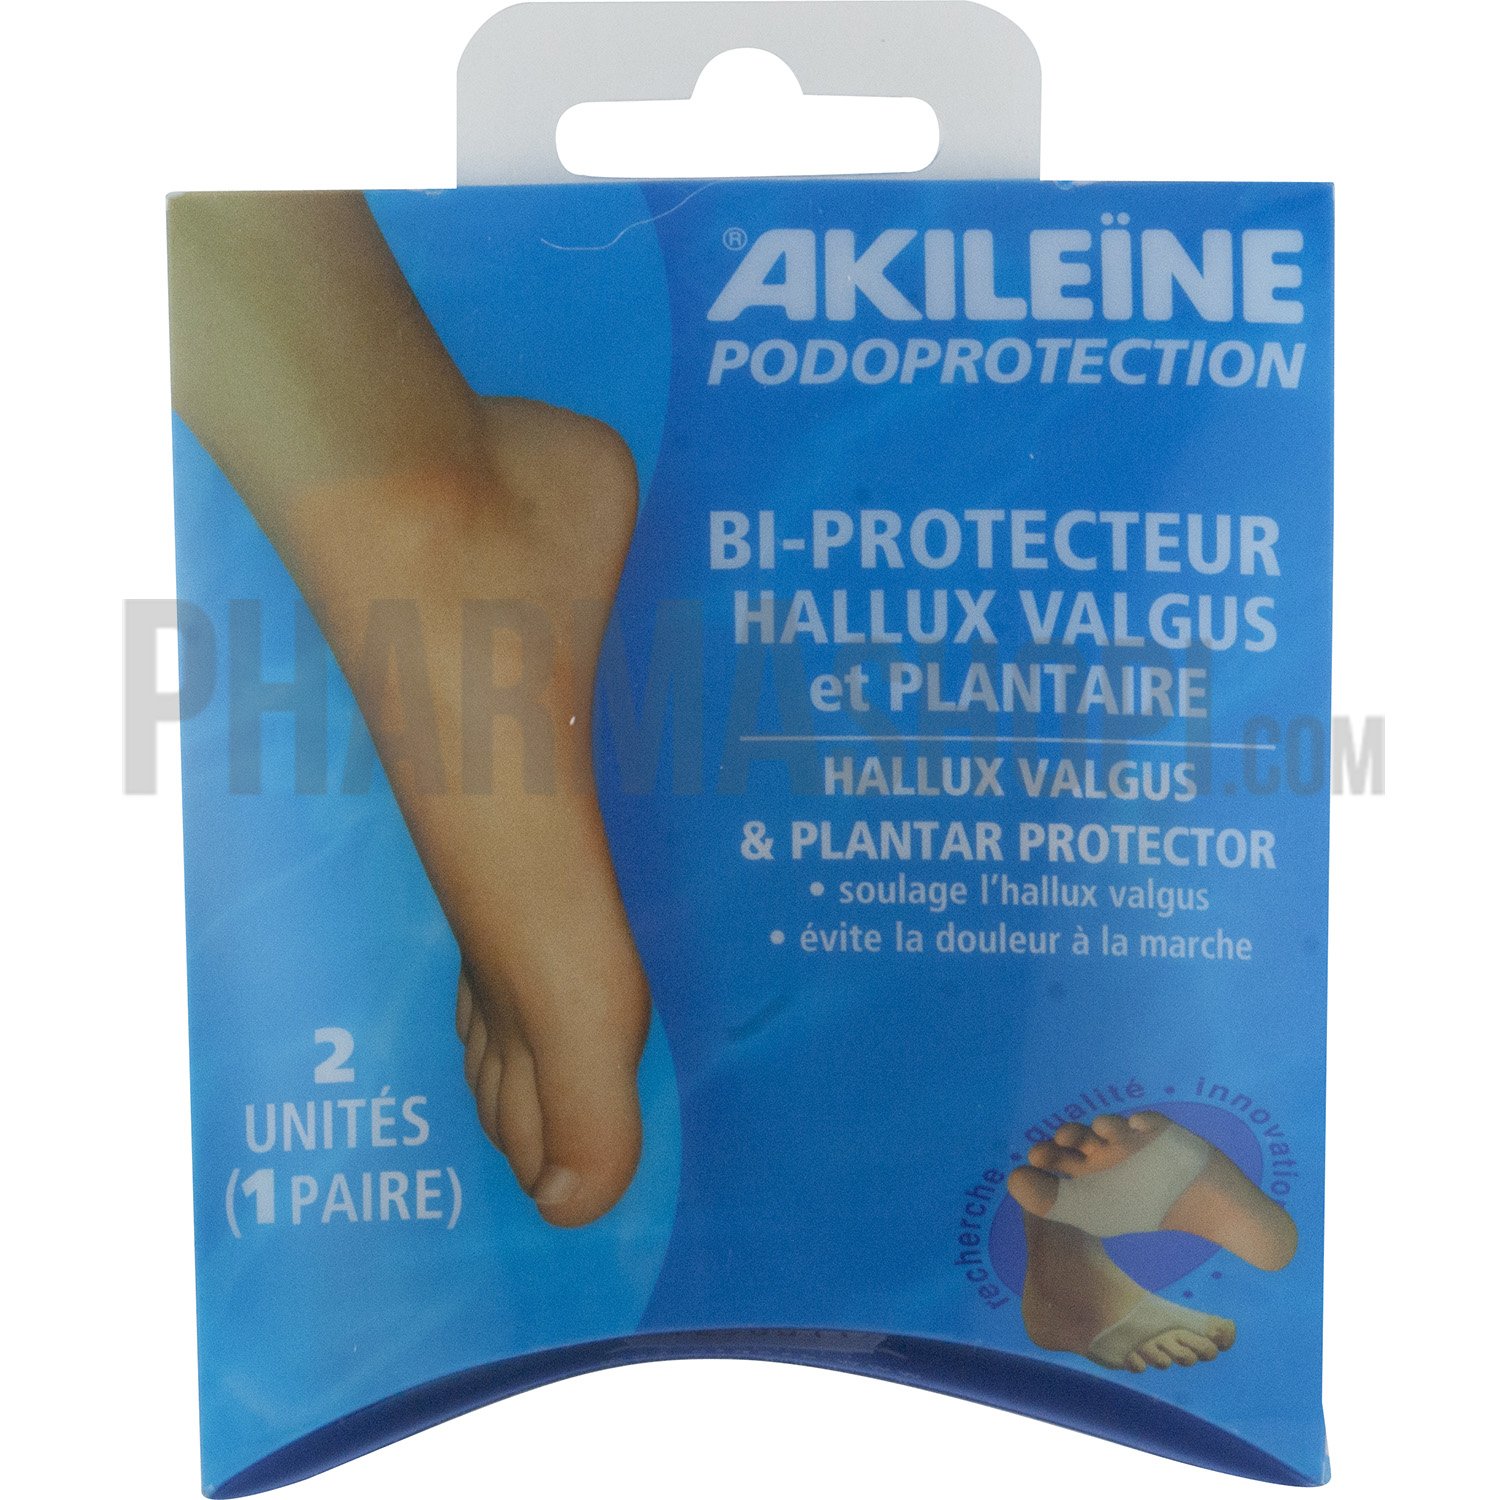 Bi-protecteur hallux valgus et plantaire Akileïne - 2 unités